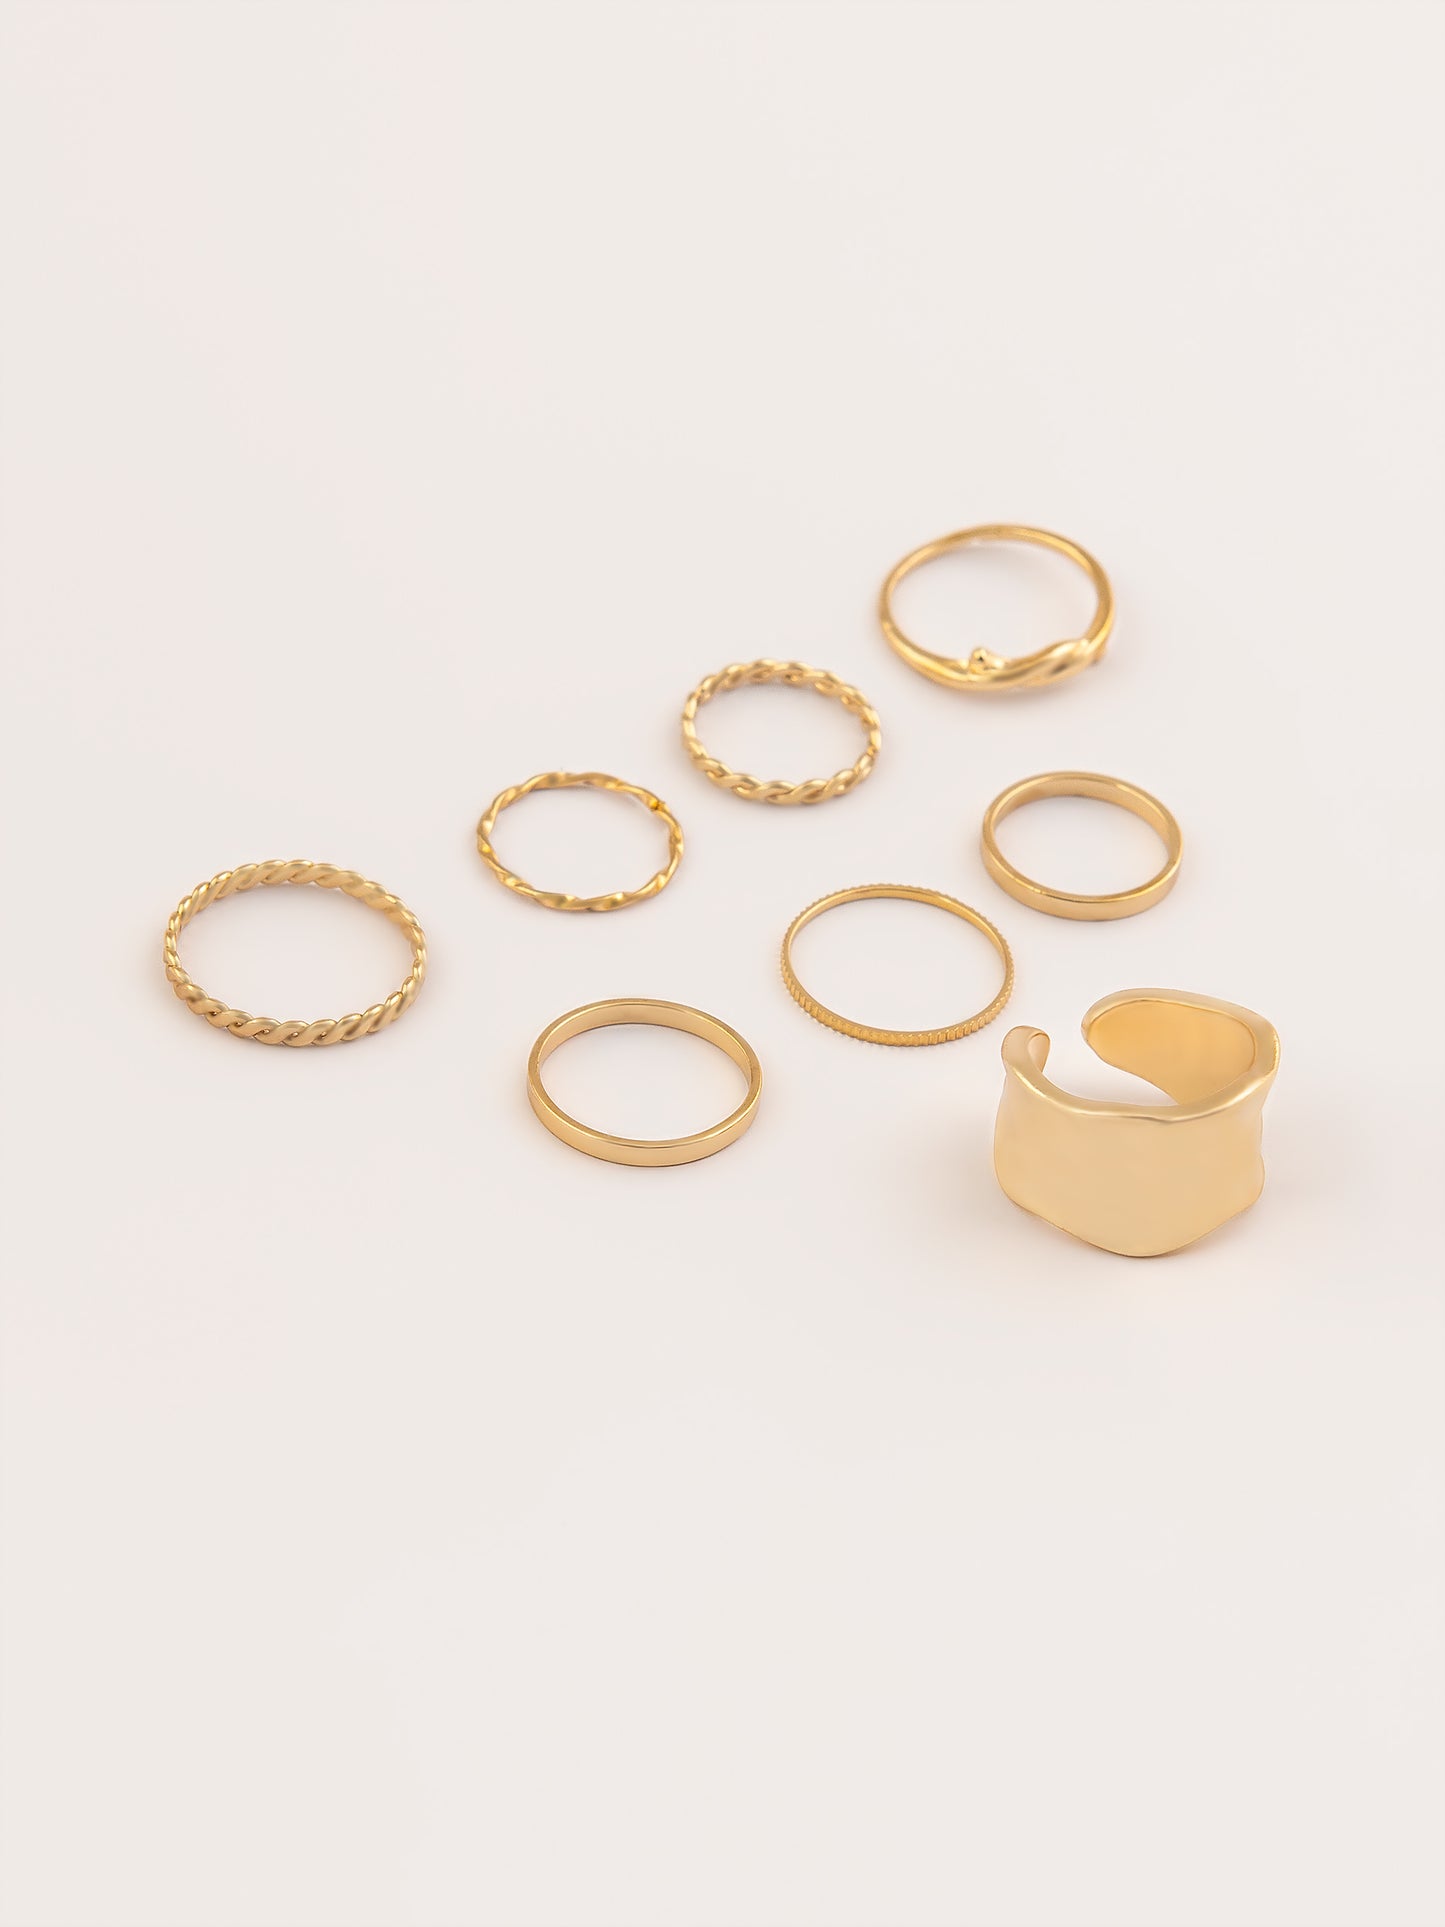 Metallic Textured Rings Set